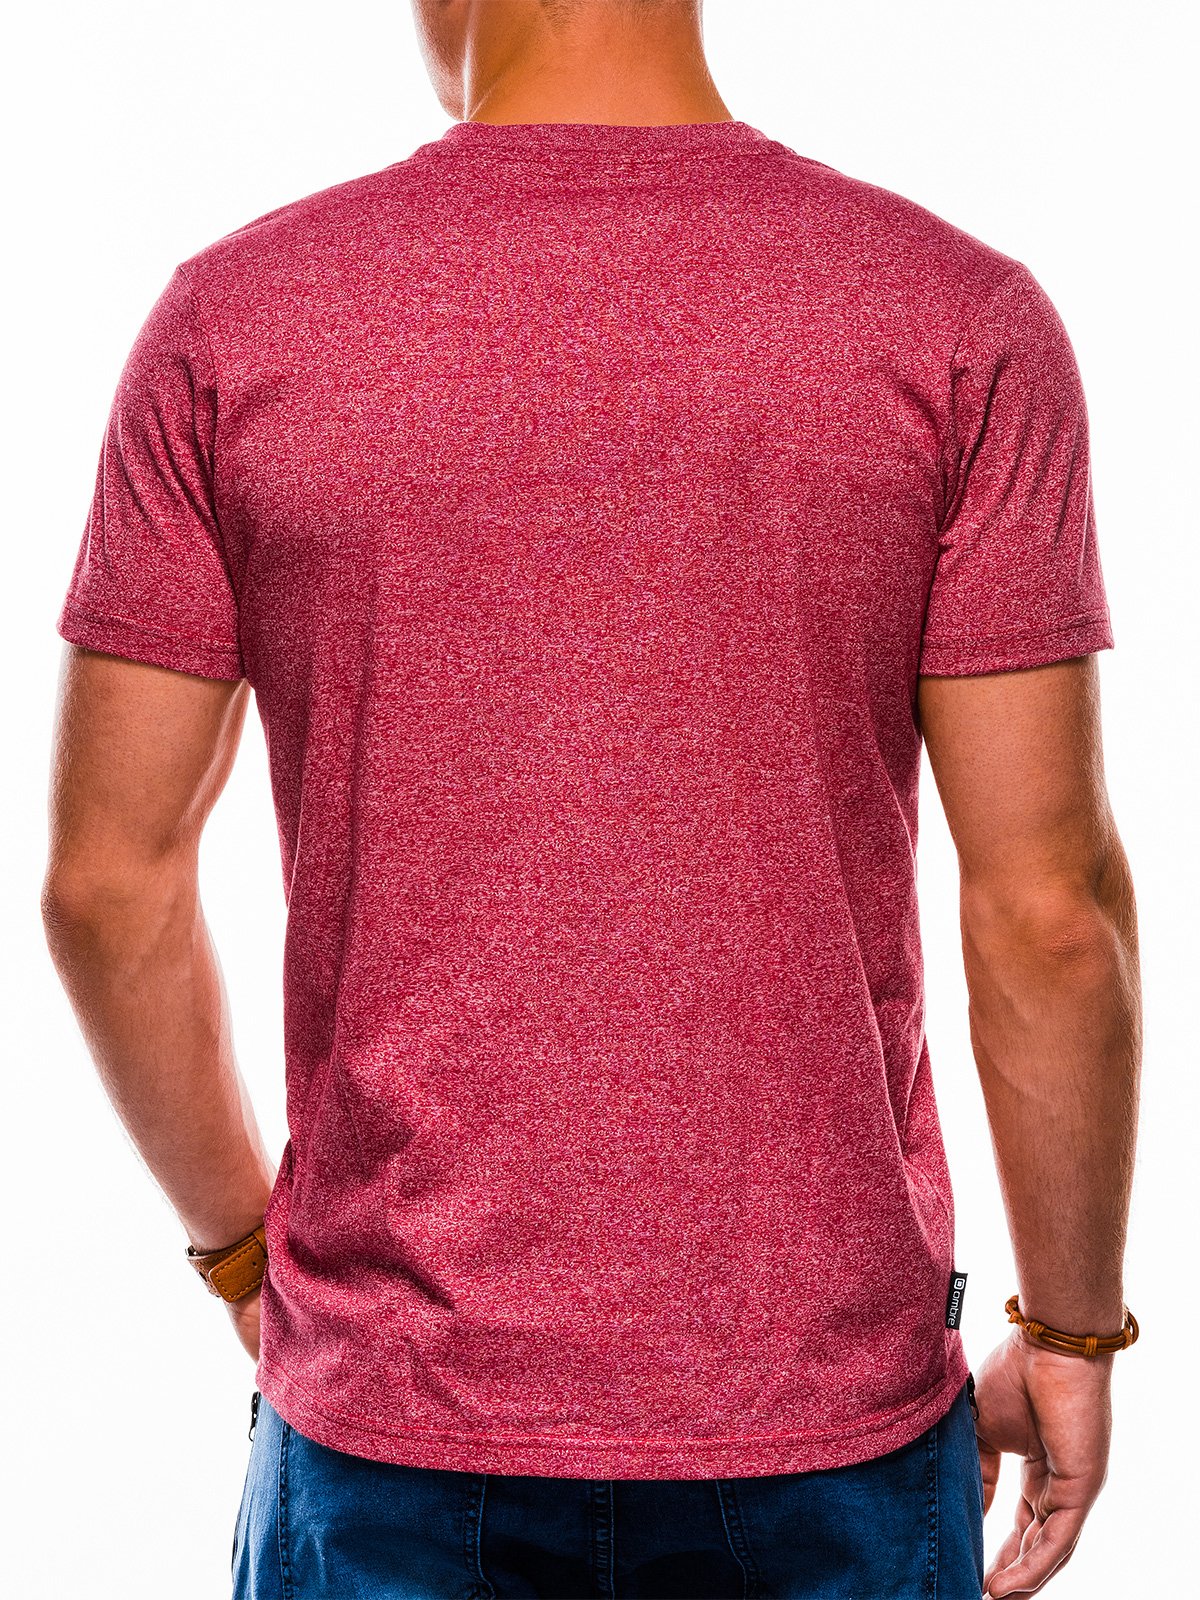 Men's plain t-shirt S1047 - red | MODONE wholesale ...